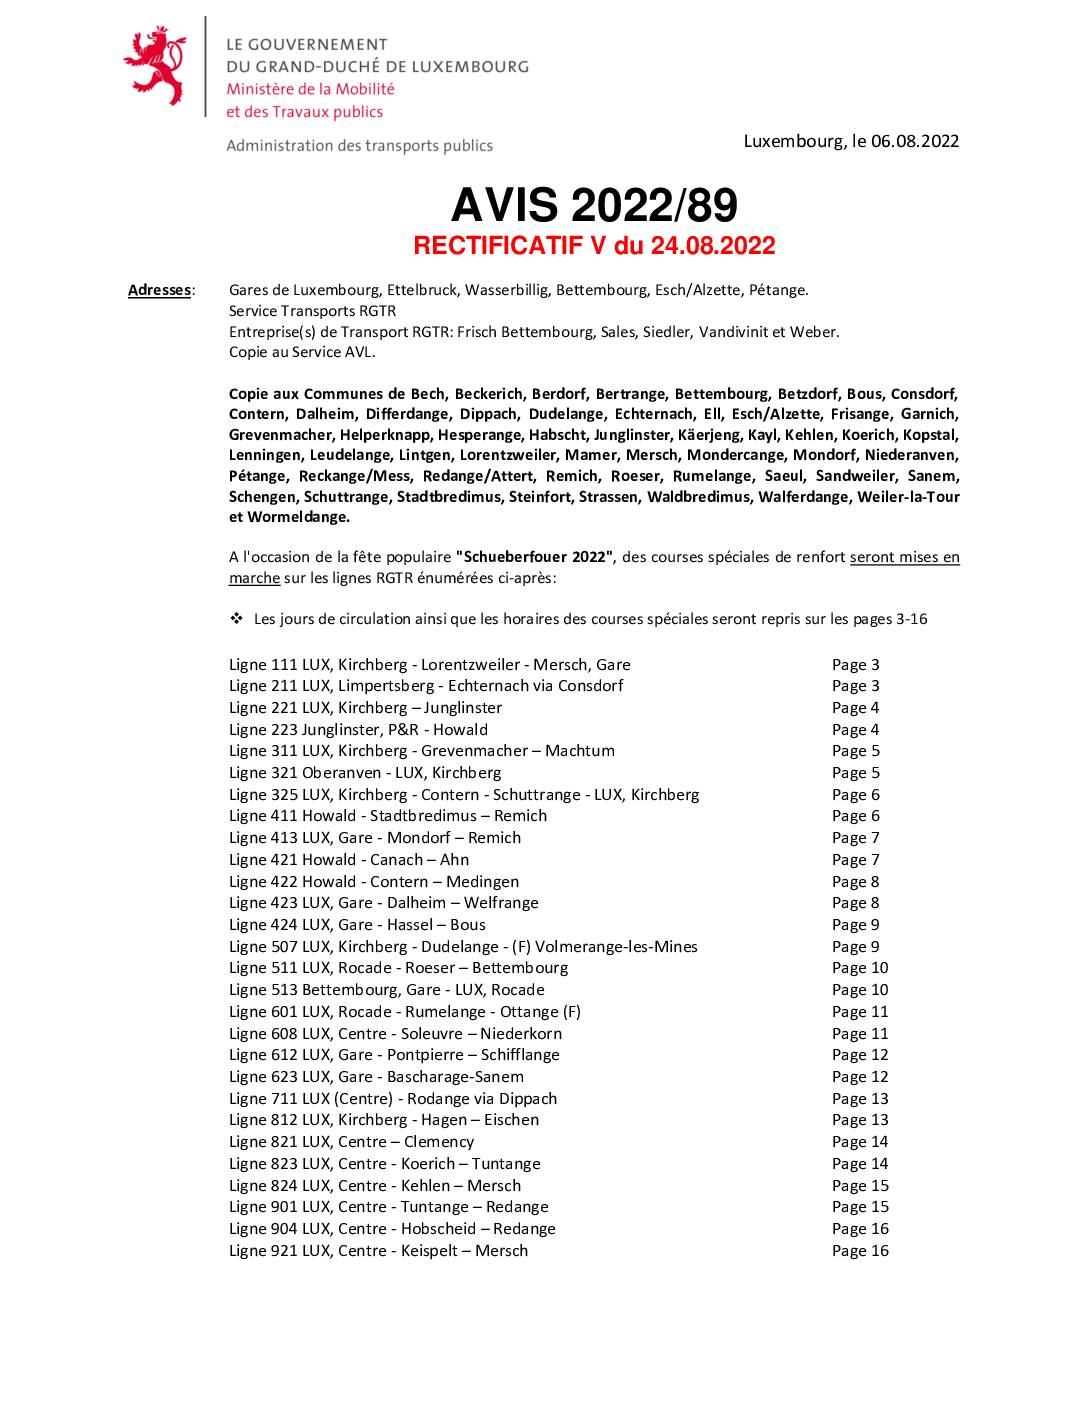 Avis RGTR – Renforcement courses spéciales Schueberfouer